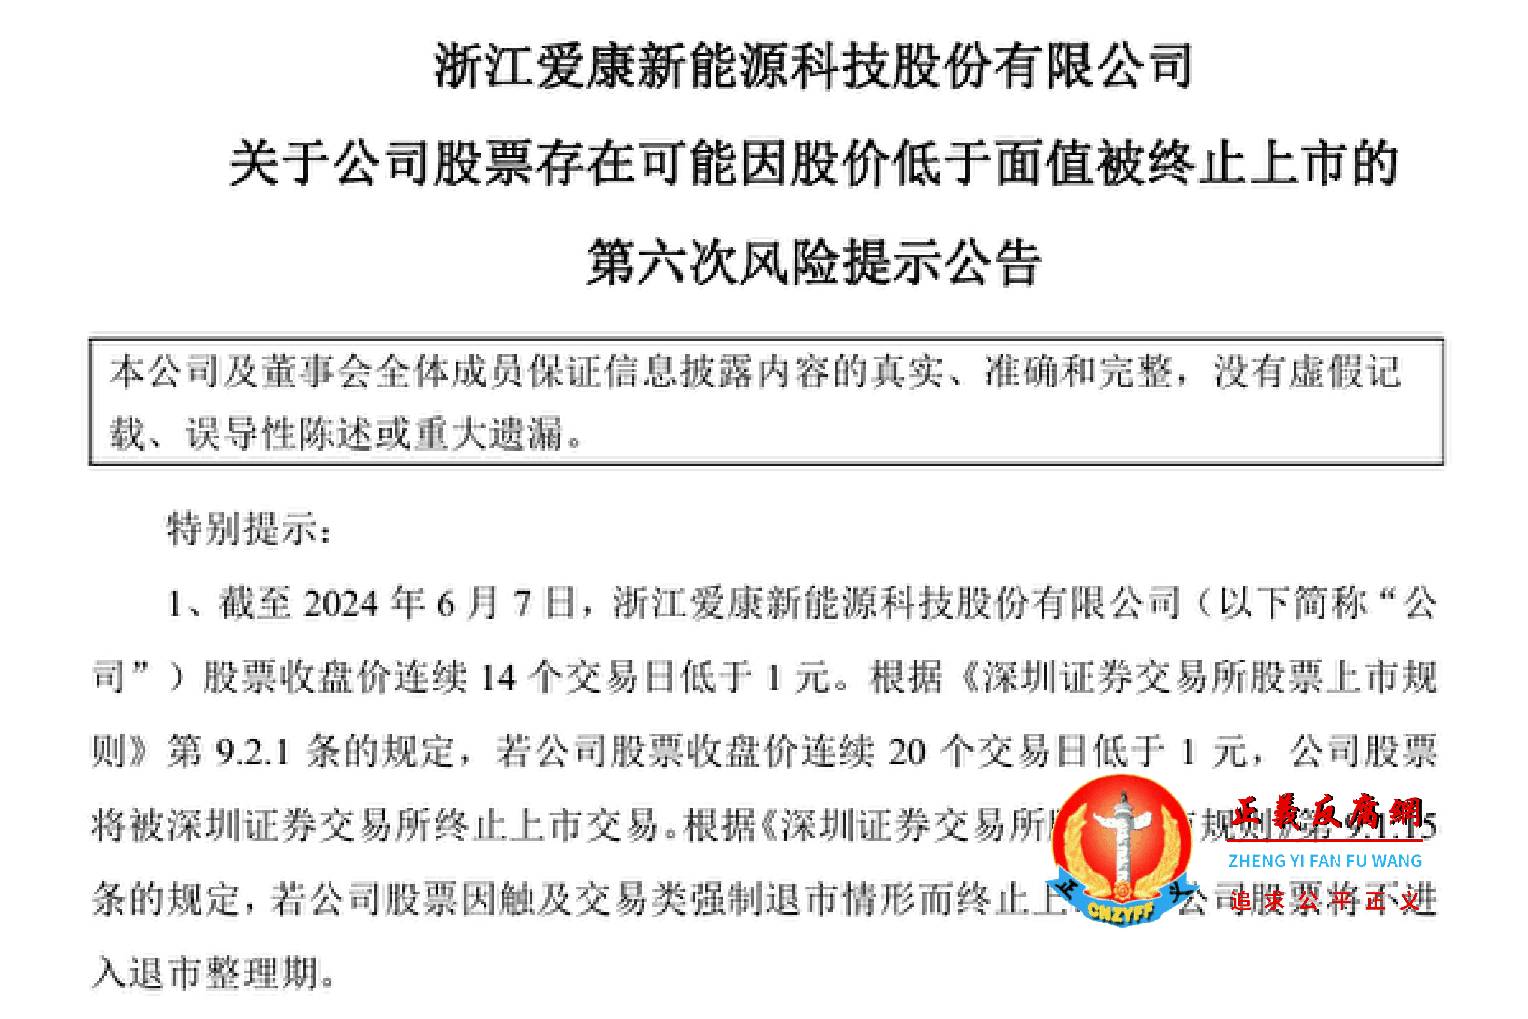 浙江爱康新能源科技股份有限公司（ST爱康“SZ002610”）６月８日第六次发布了公司股票存在退市风险的公告。.png